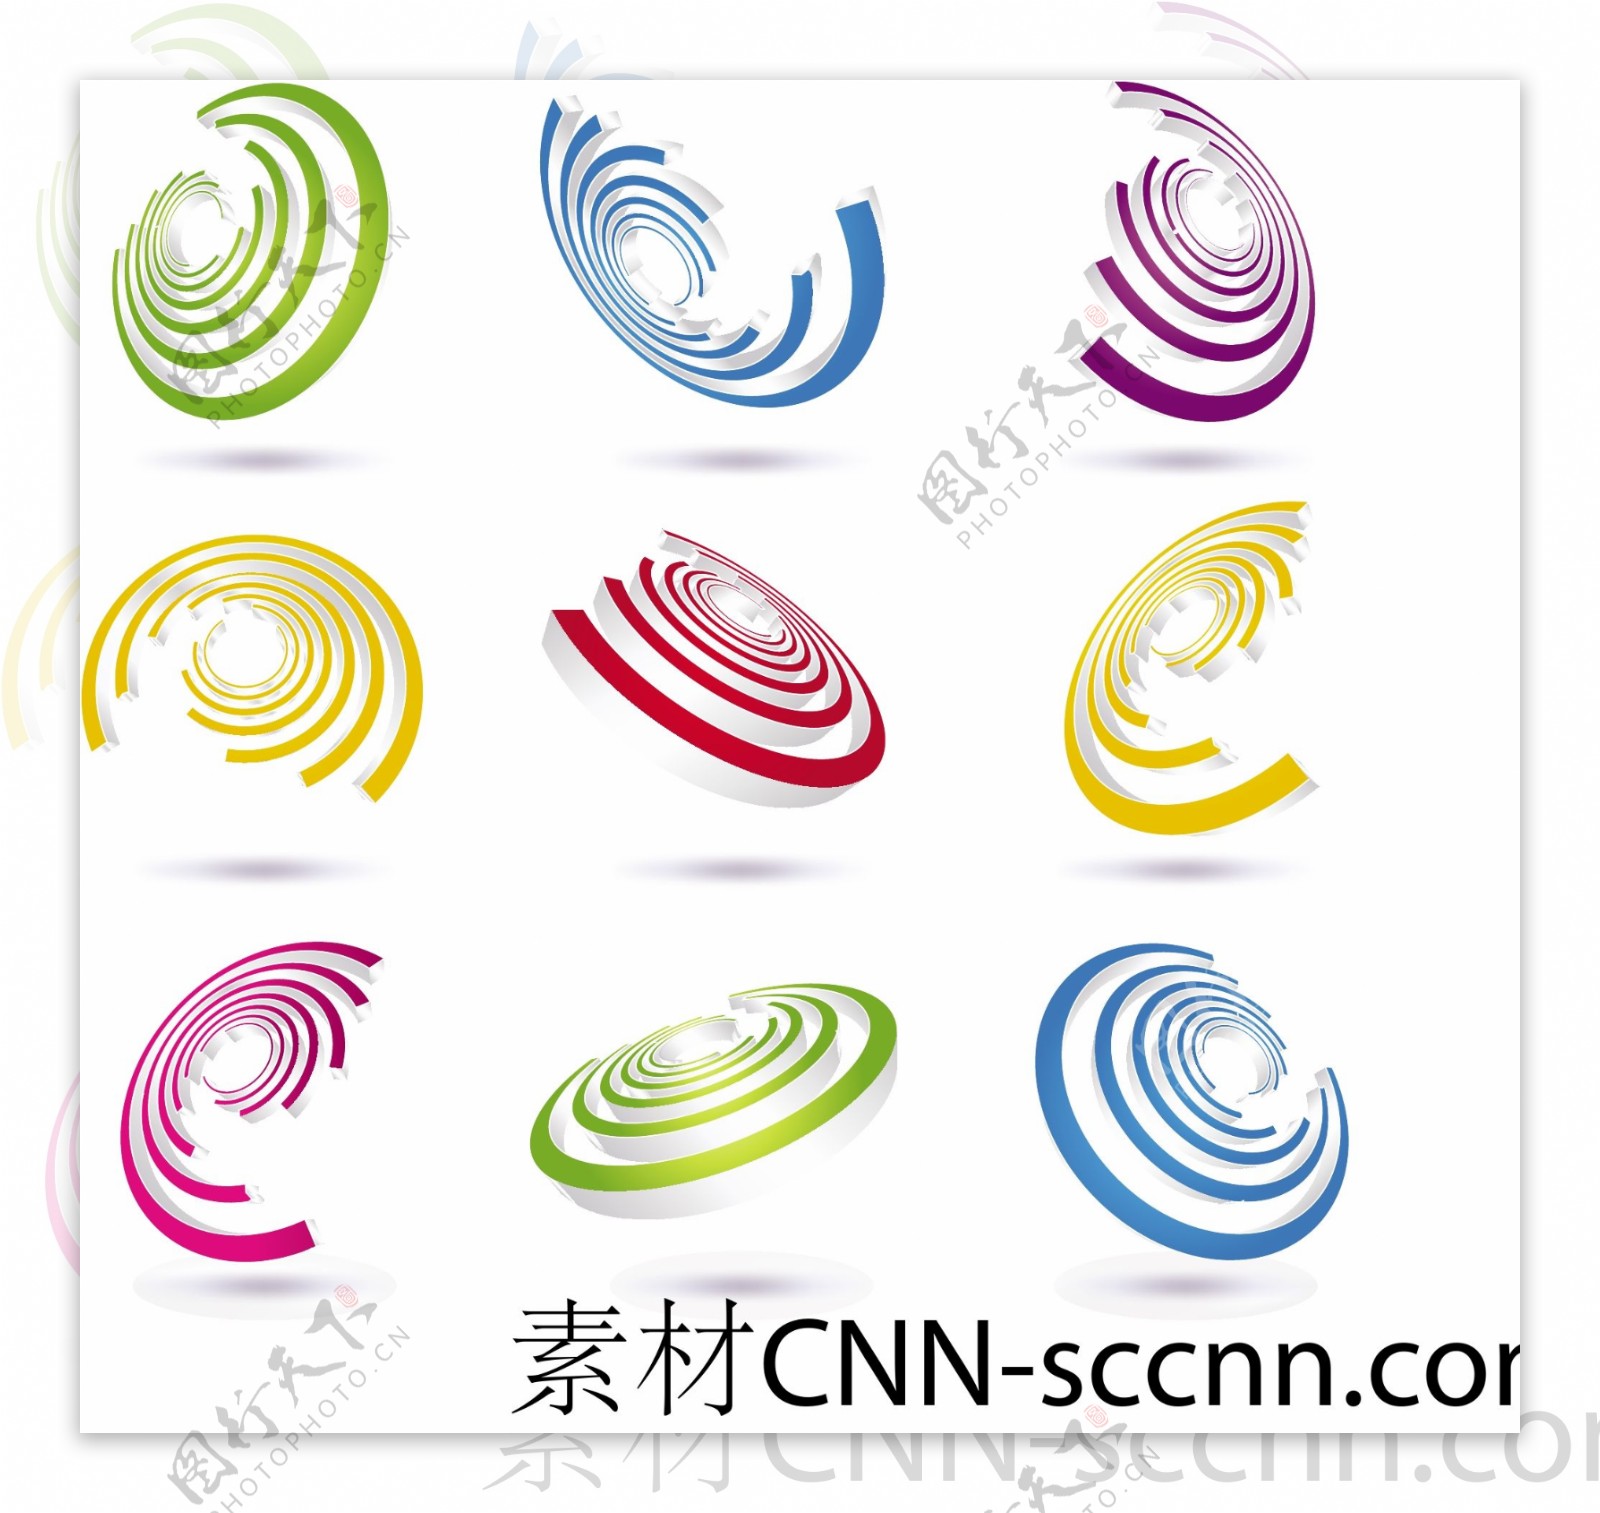 立体彩环logo图标设计矢量素材